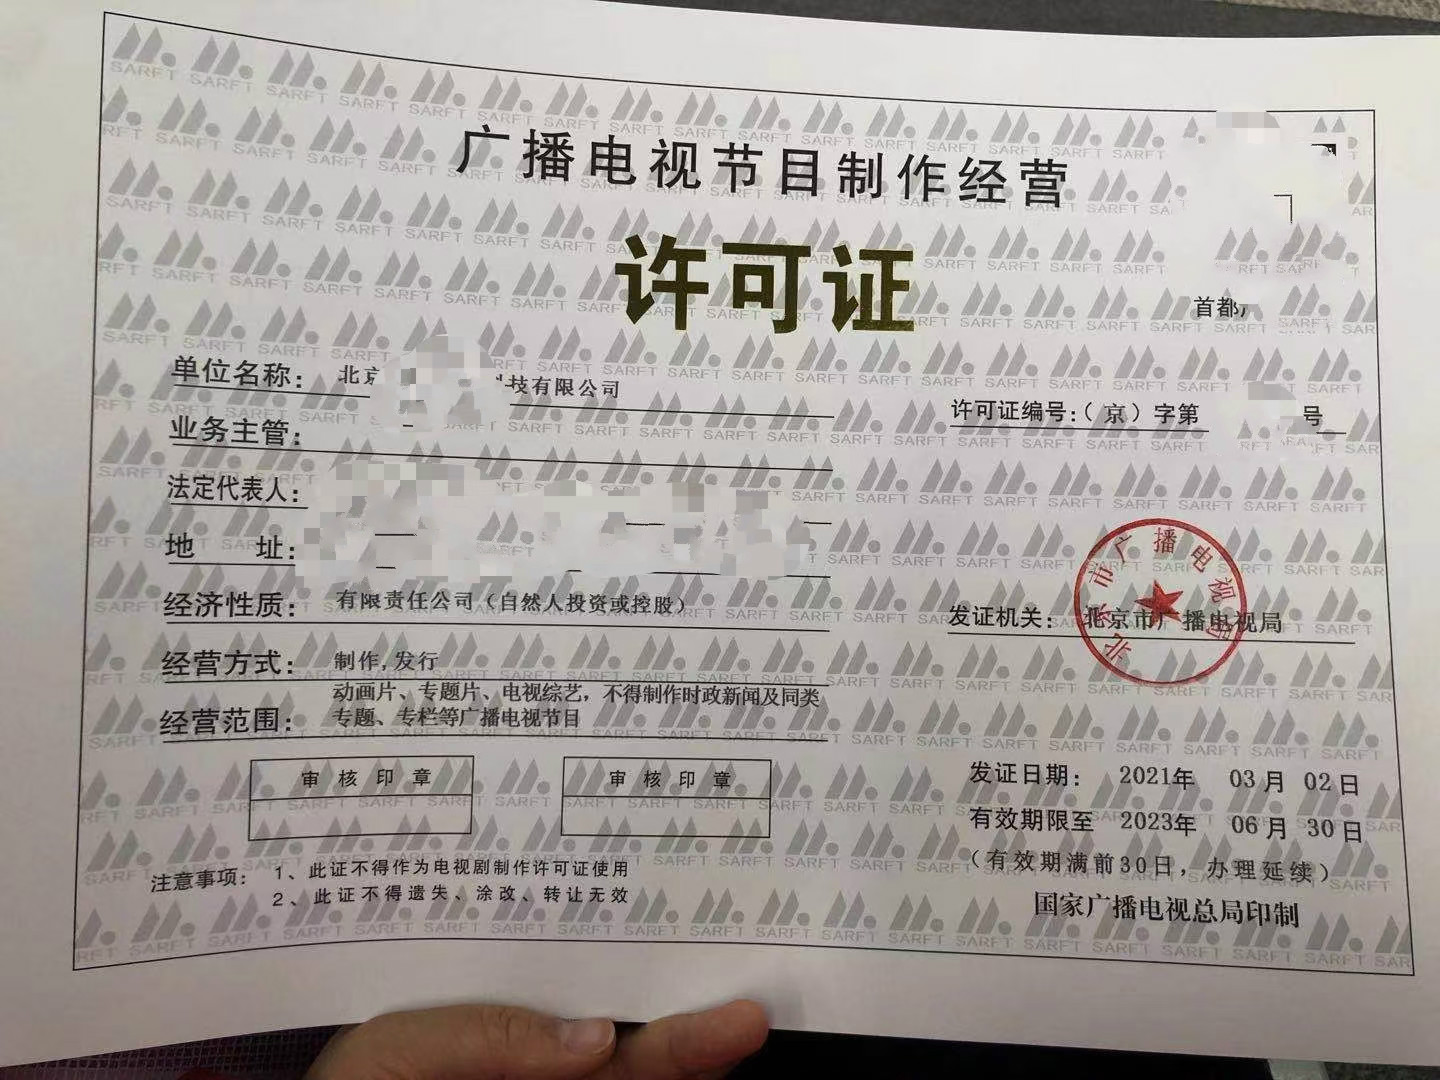 审批时间北京市延庆区广播电视节目制作经营许可证申请